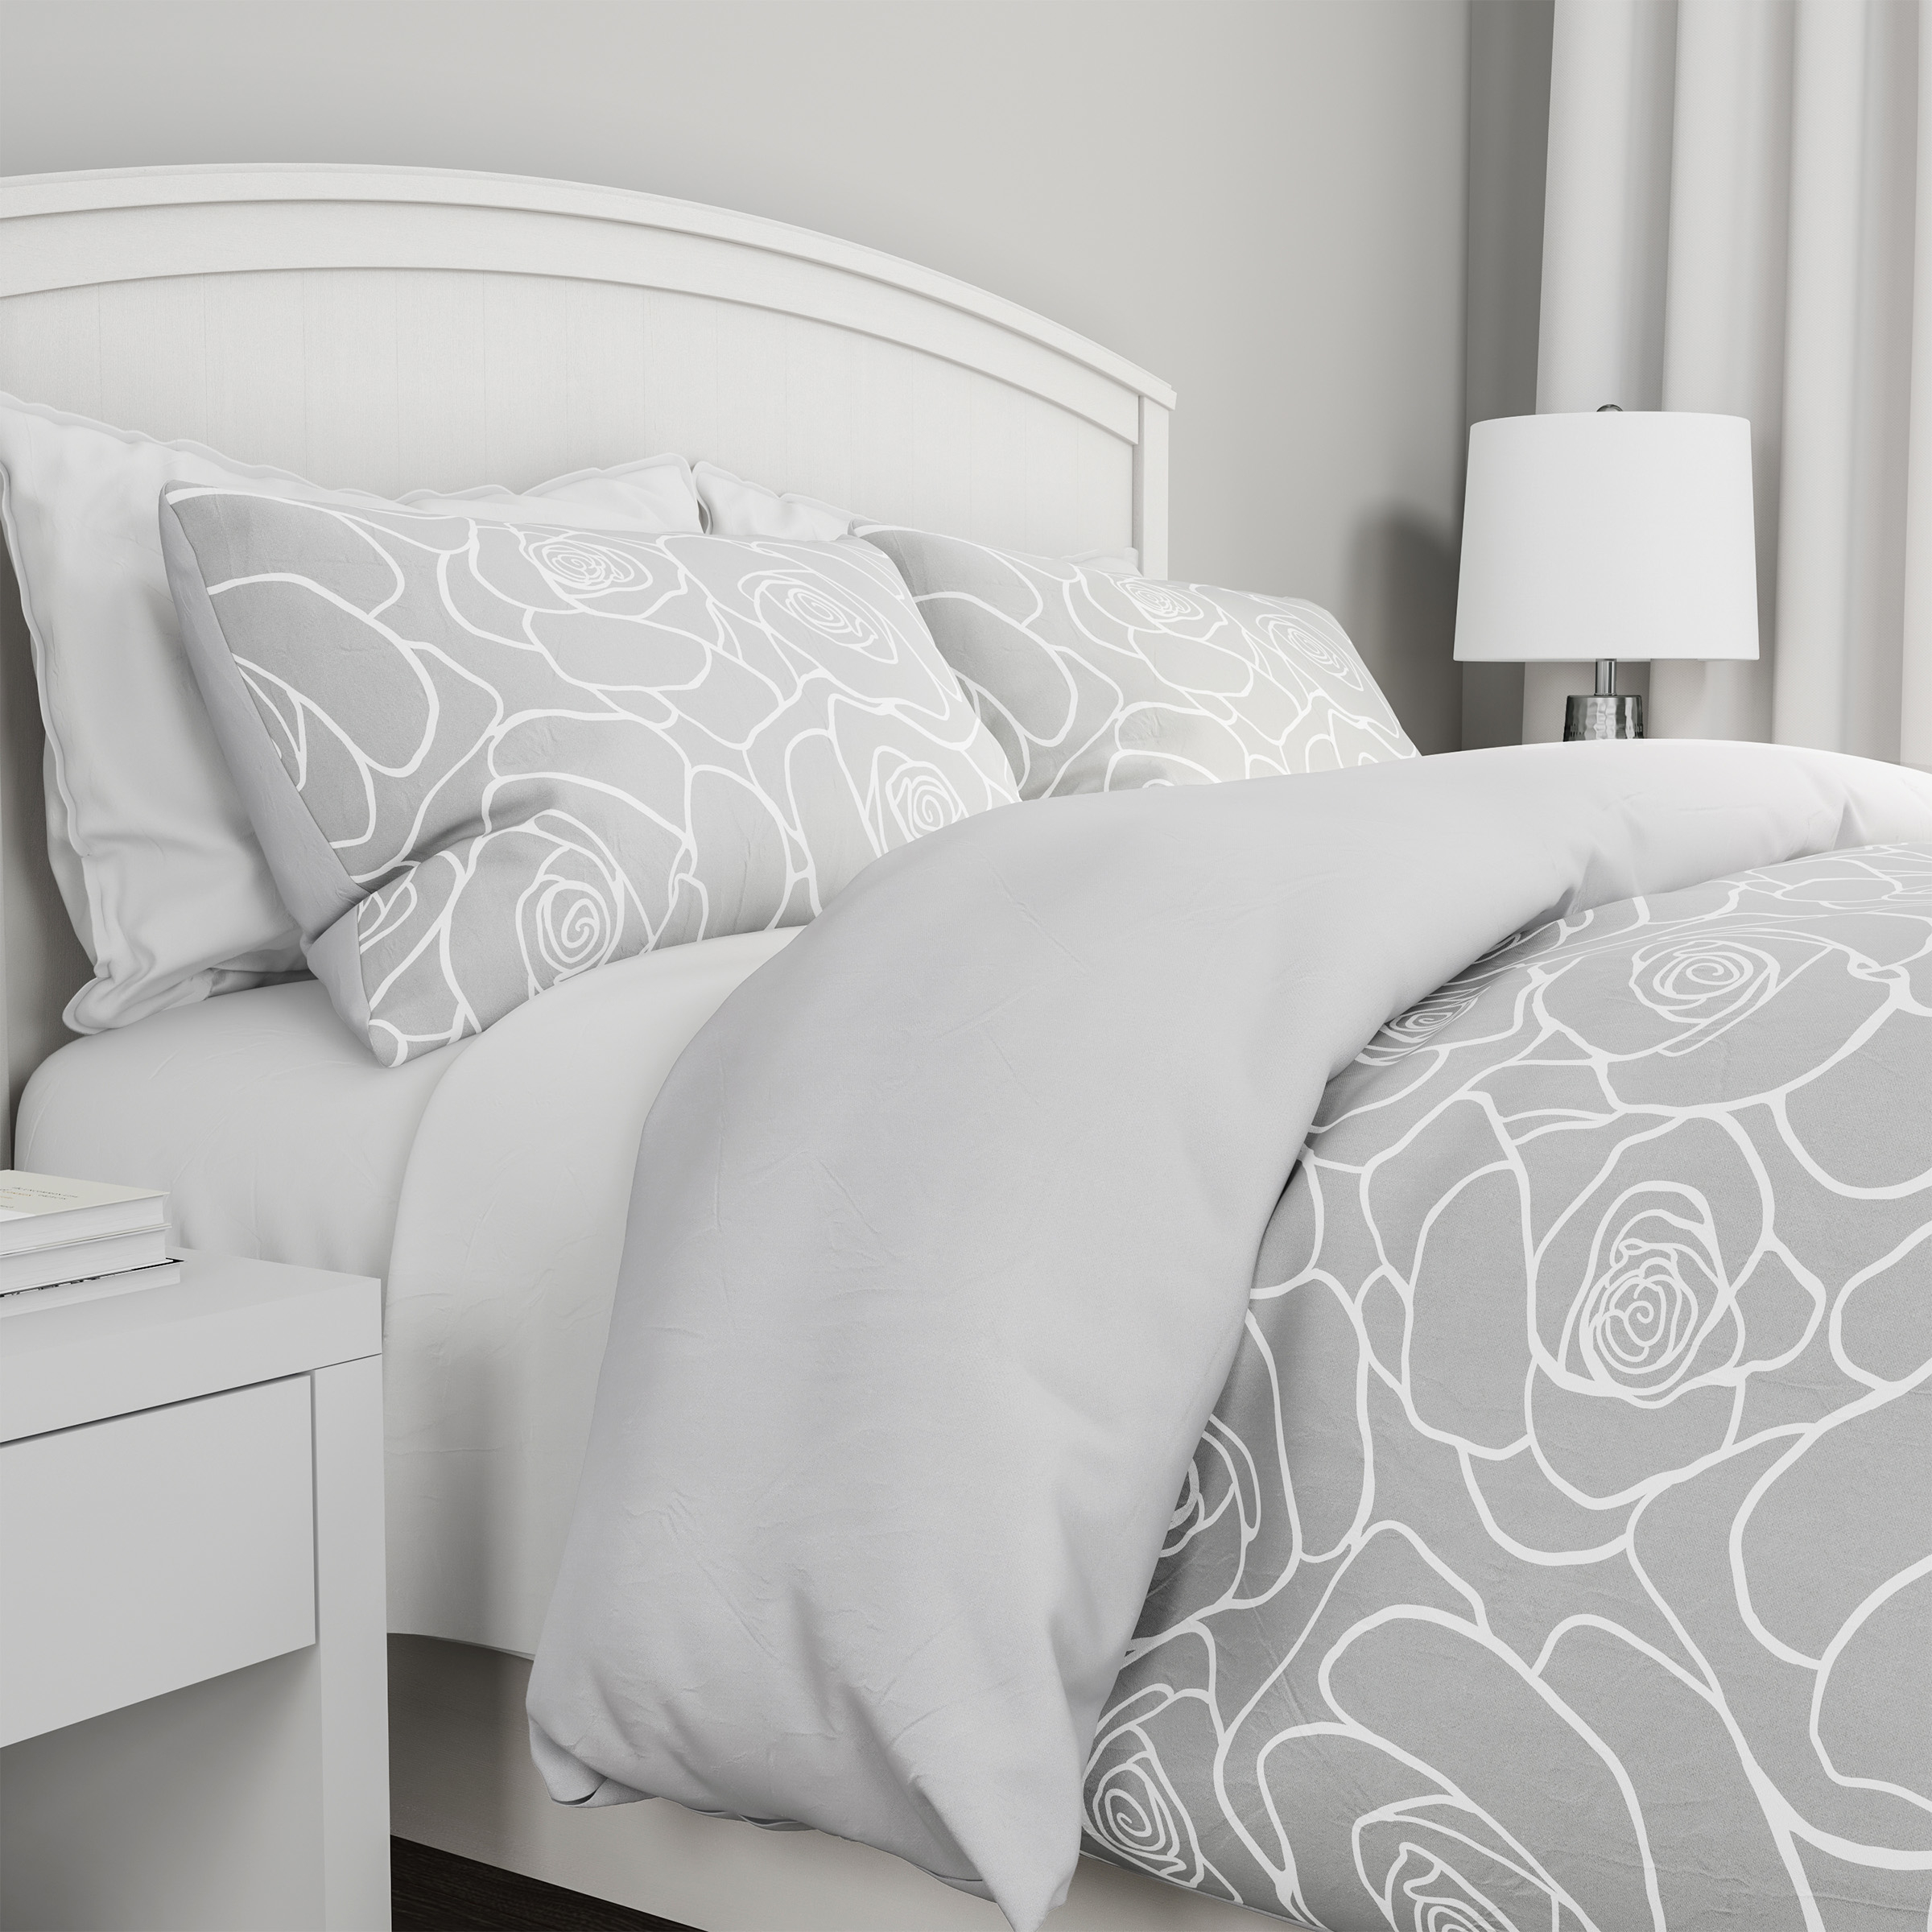 3-Piece Comforter Set â Hypoallergenic Microfiber Bed Of Roses Floral Print Down Alternative All-Season Blanket - King